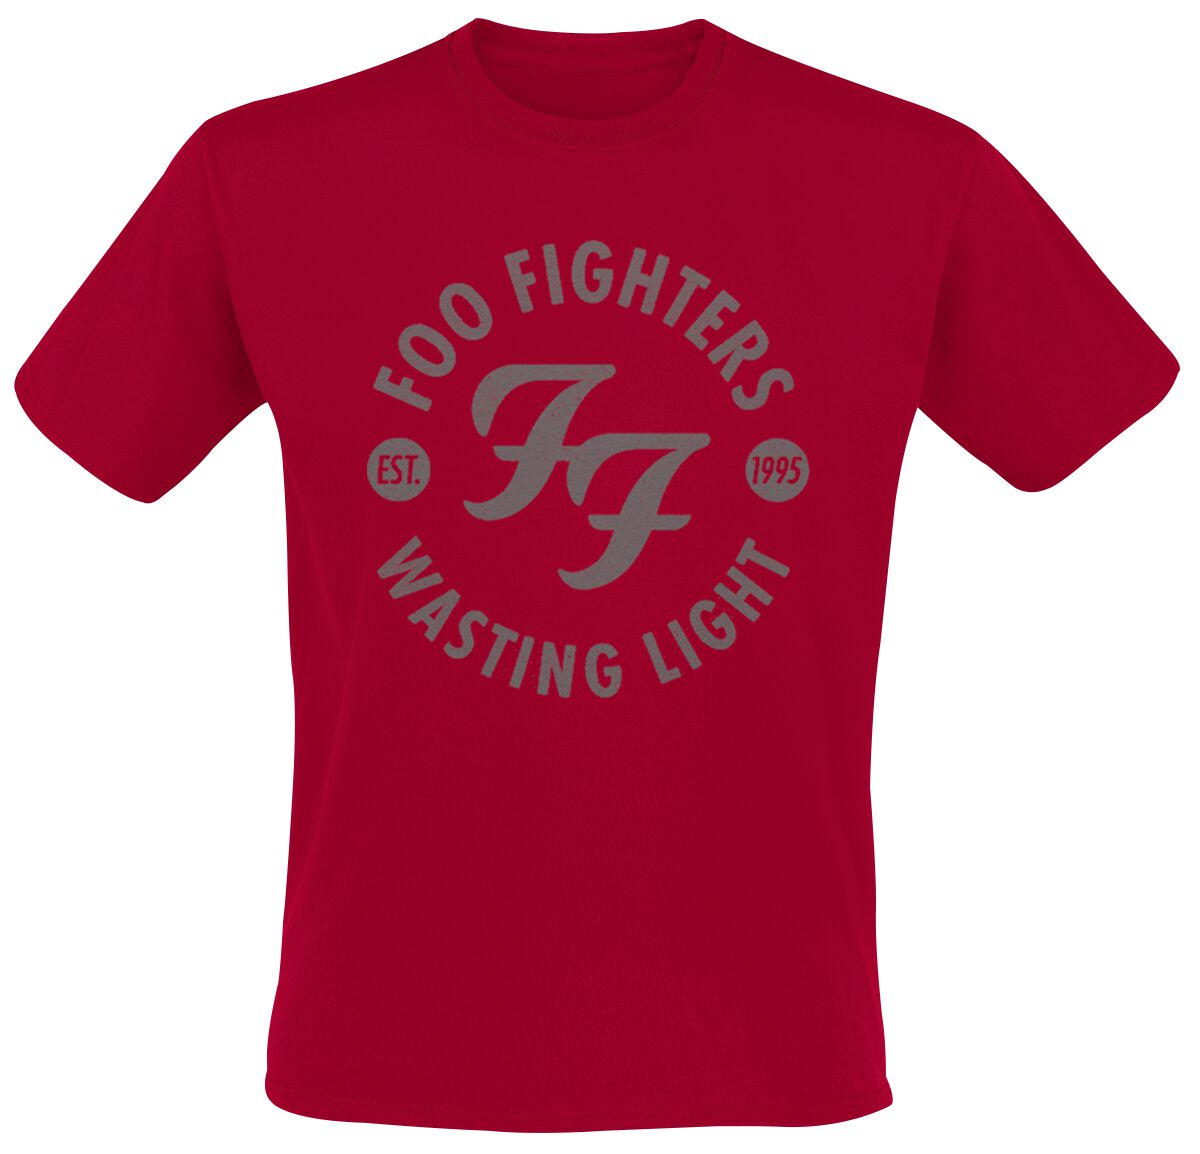 Foo Fighters T-Shirt - Wasting Light - S bis XXL - für Männer - Größe S - rot  - Lizenziertes Merchandise!